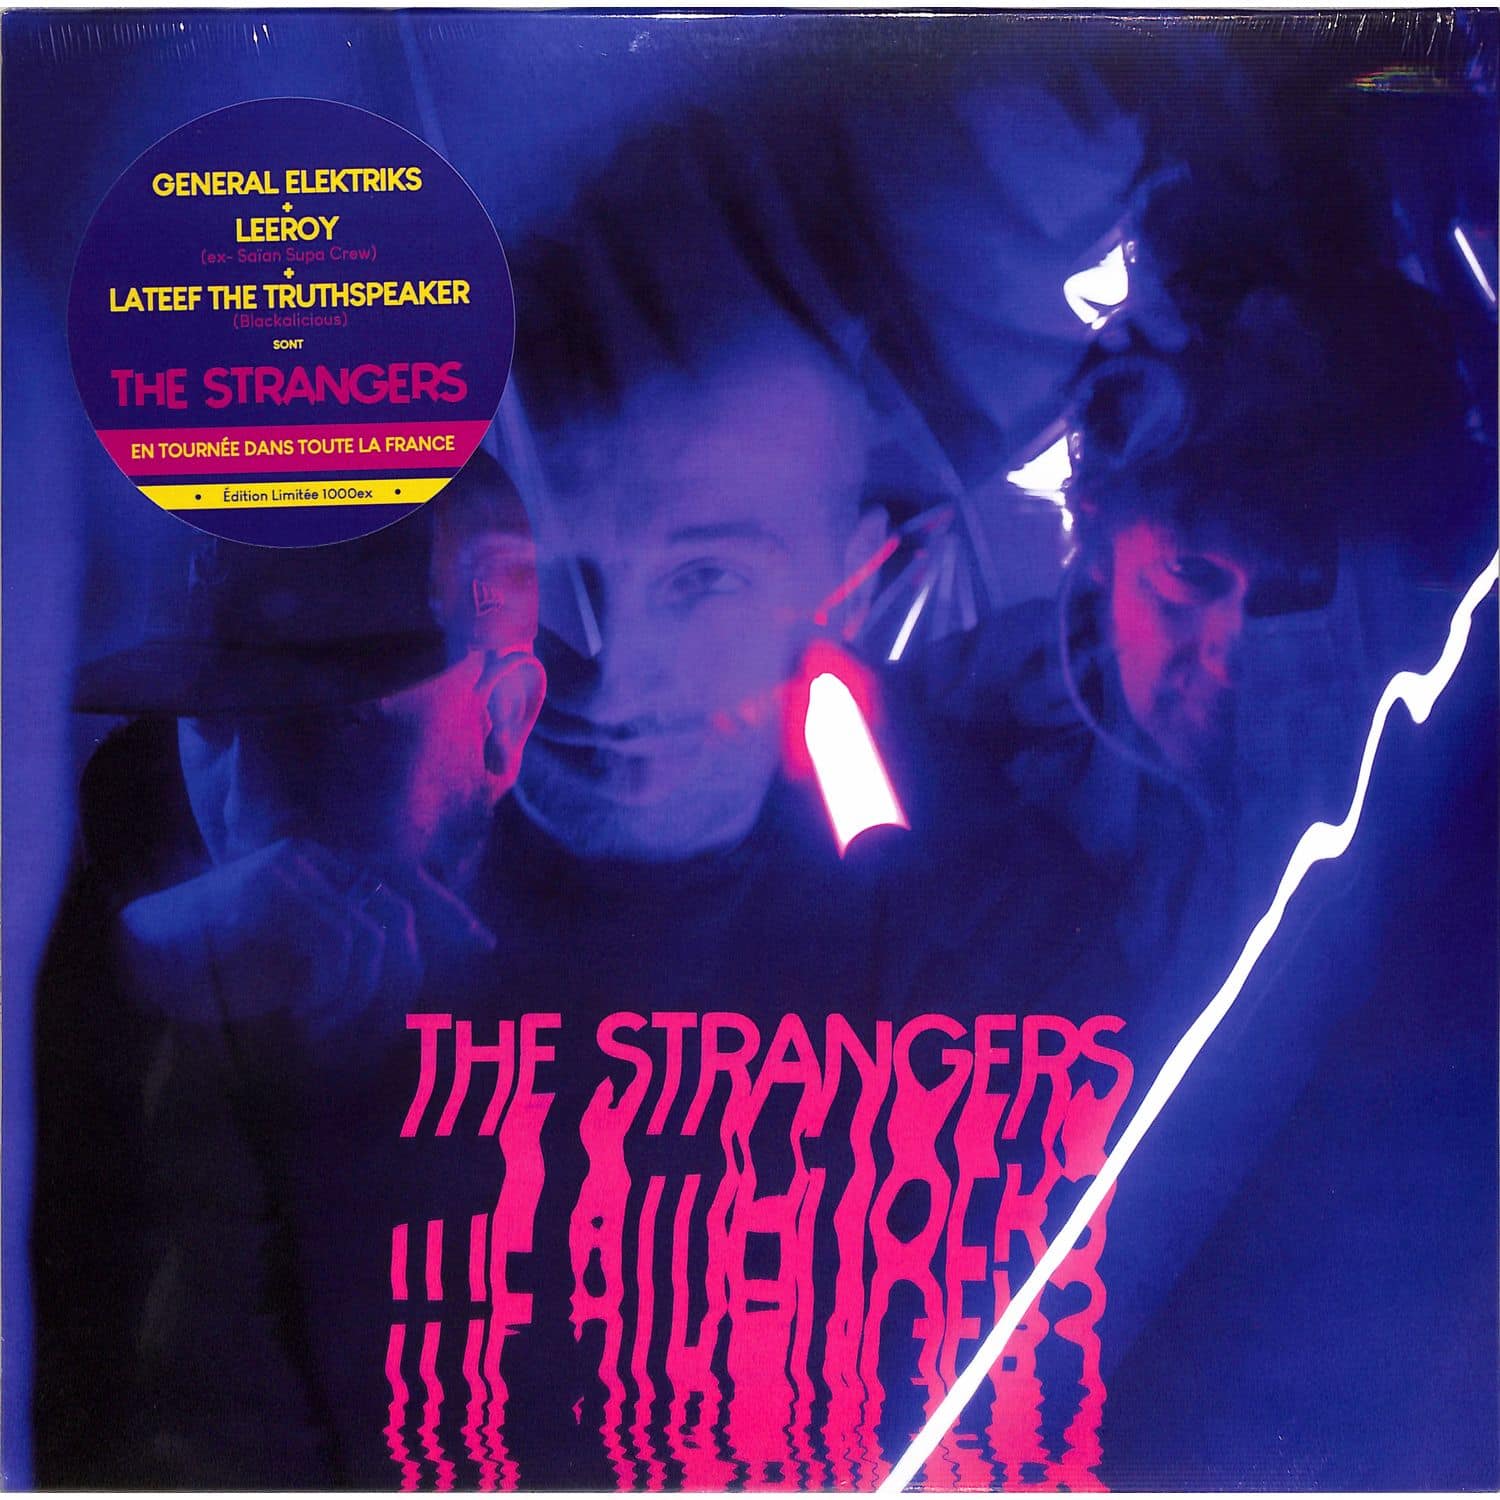 The Strangers - THE STRANGERS 